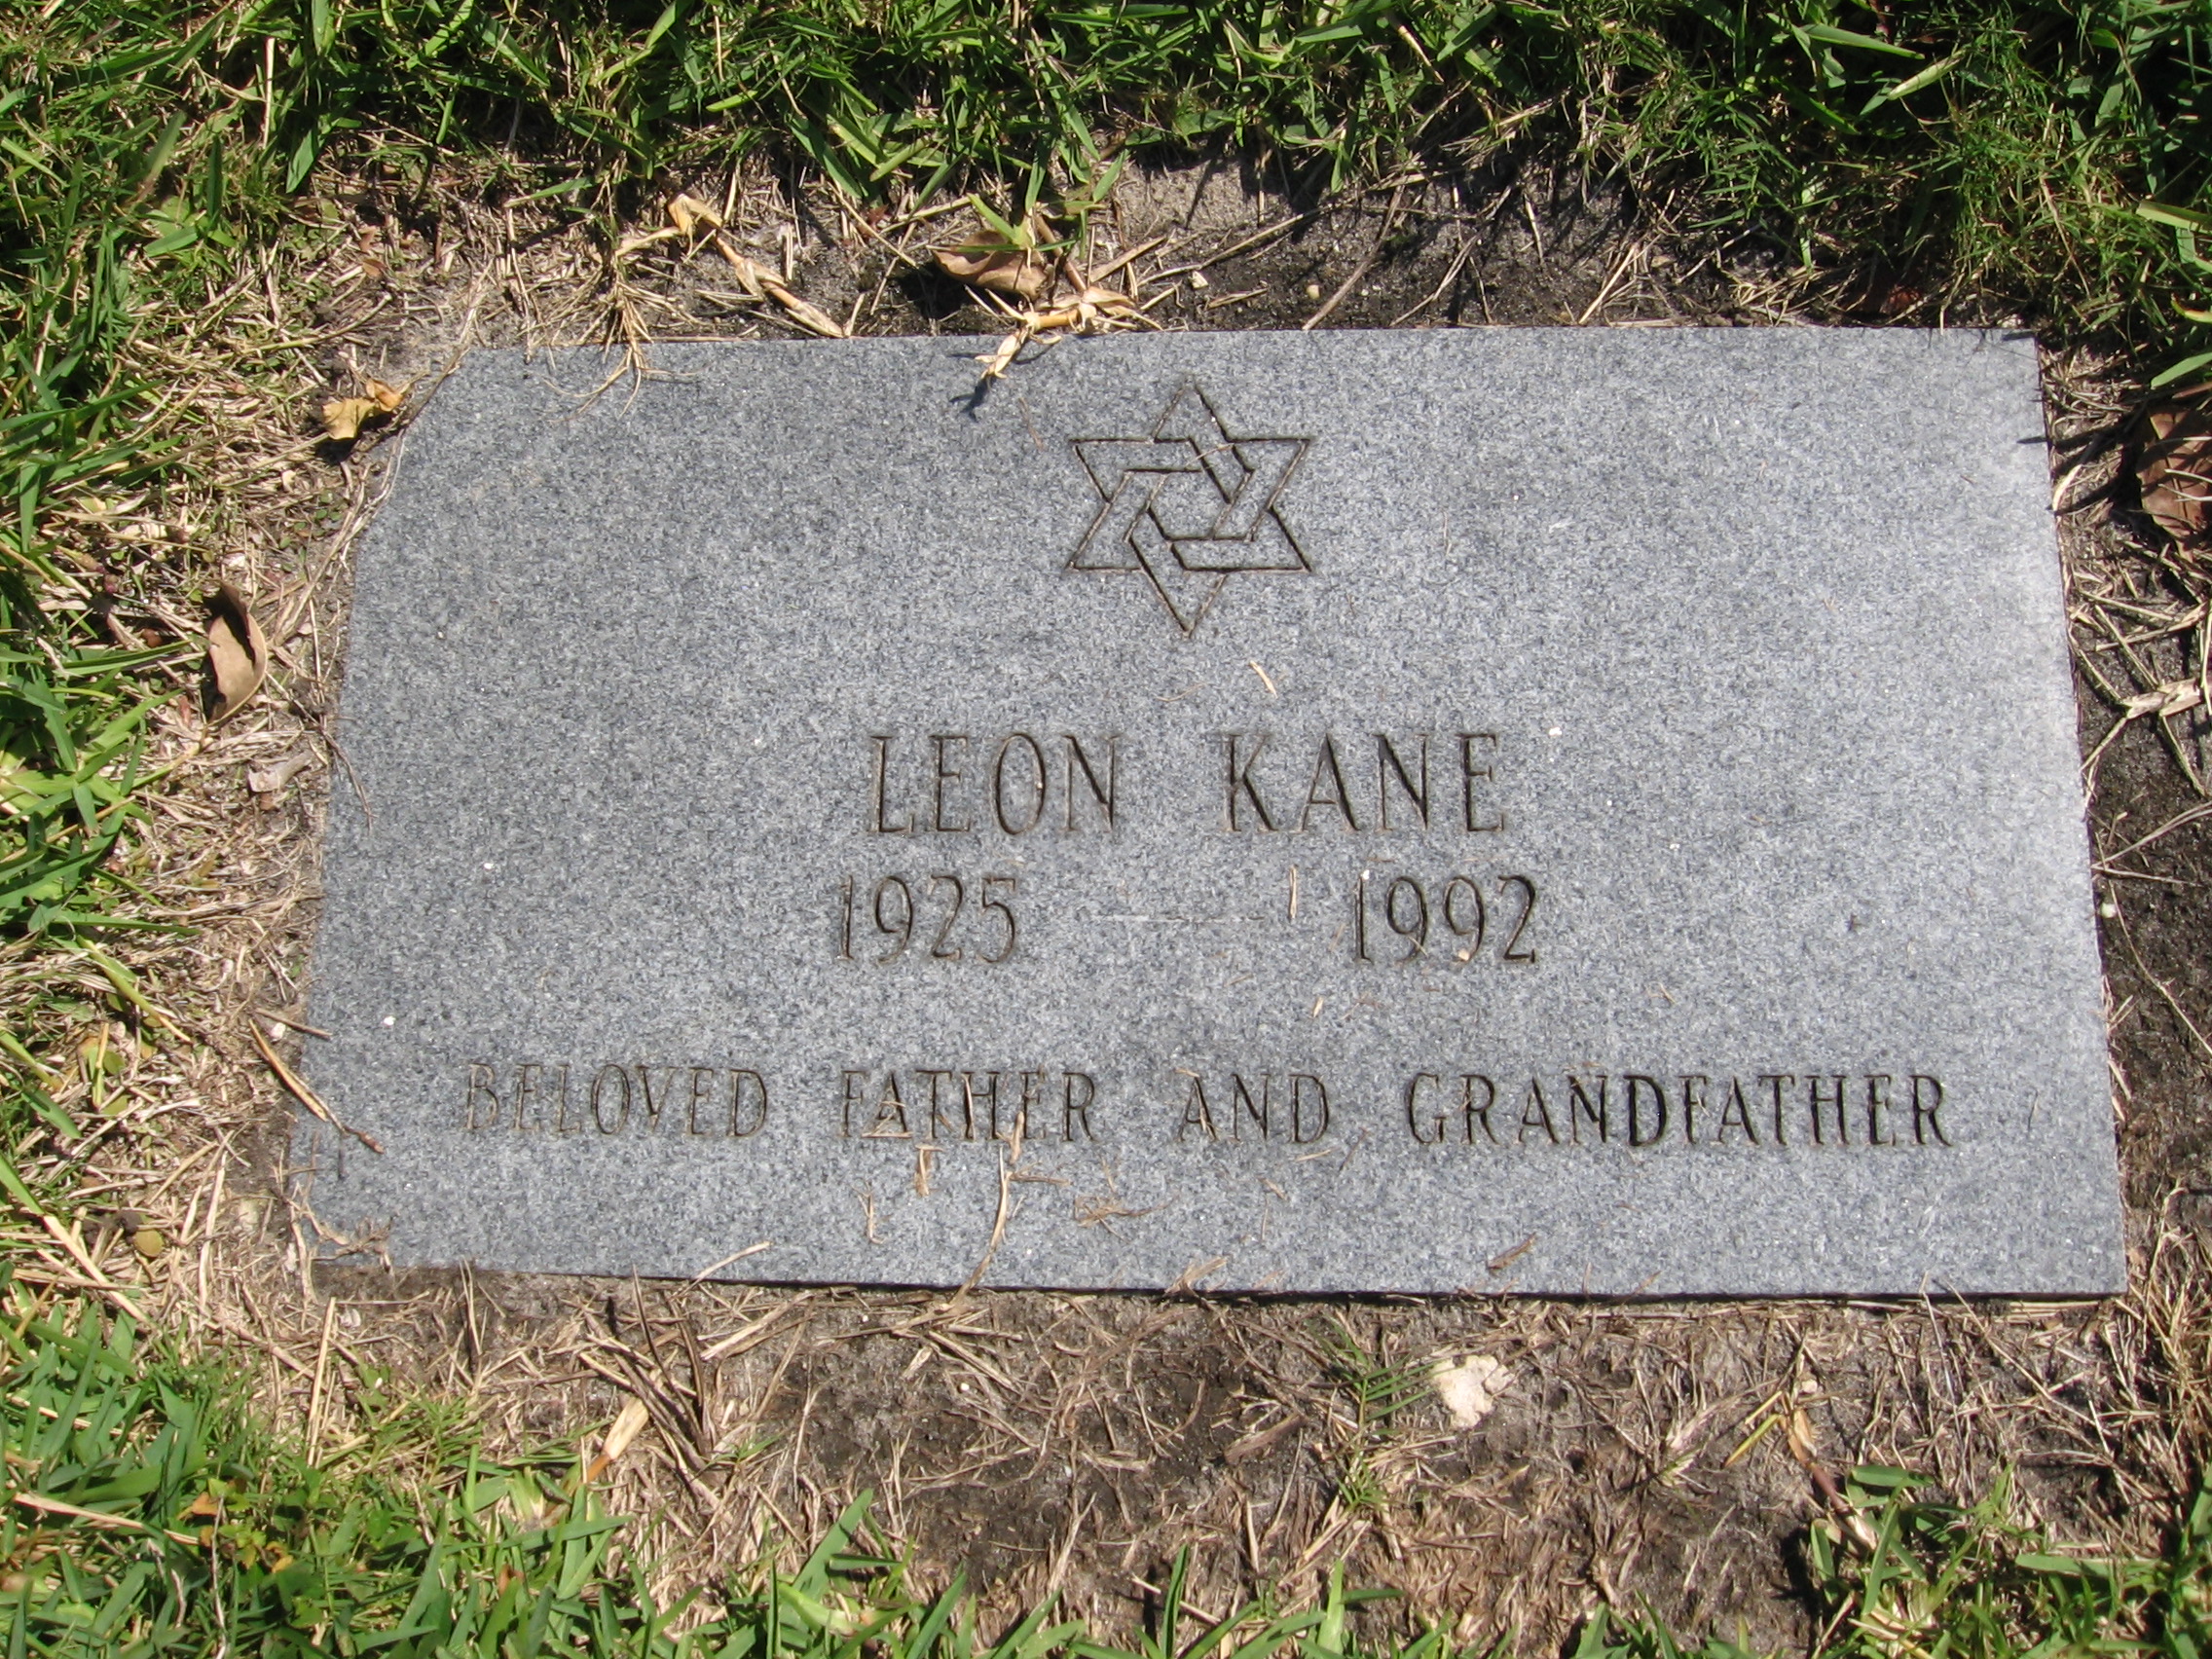 Leon Kane